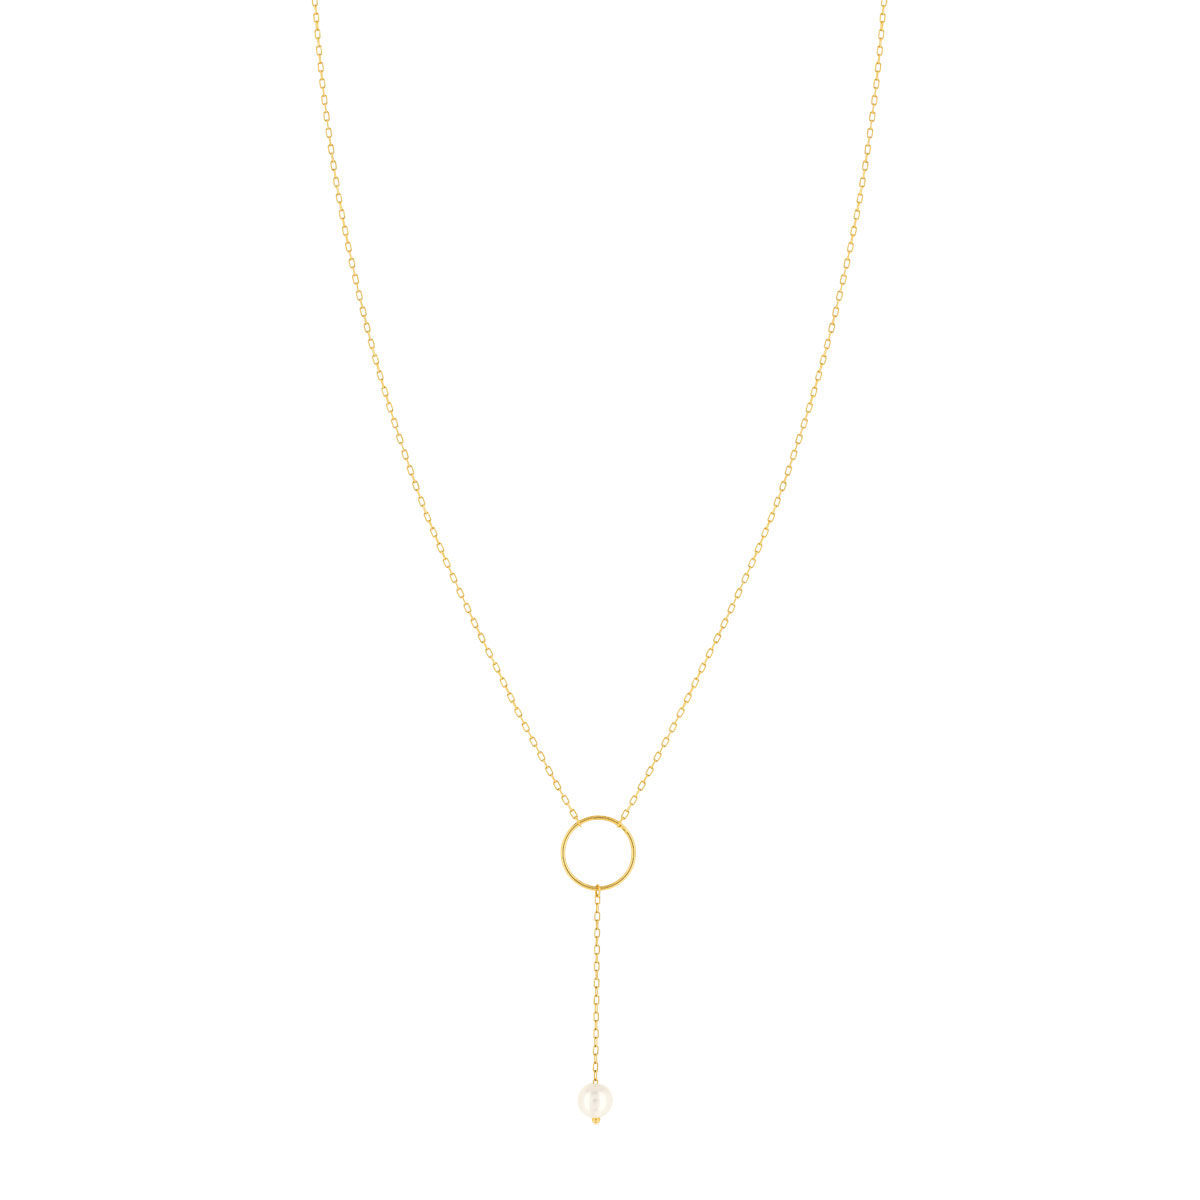 Collier or jaune 375, motif anneau, perle de culture de Chine. Longueur 40 cm. - vue 2